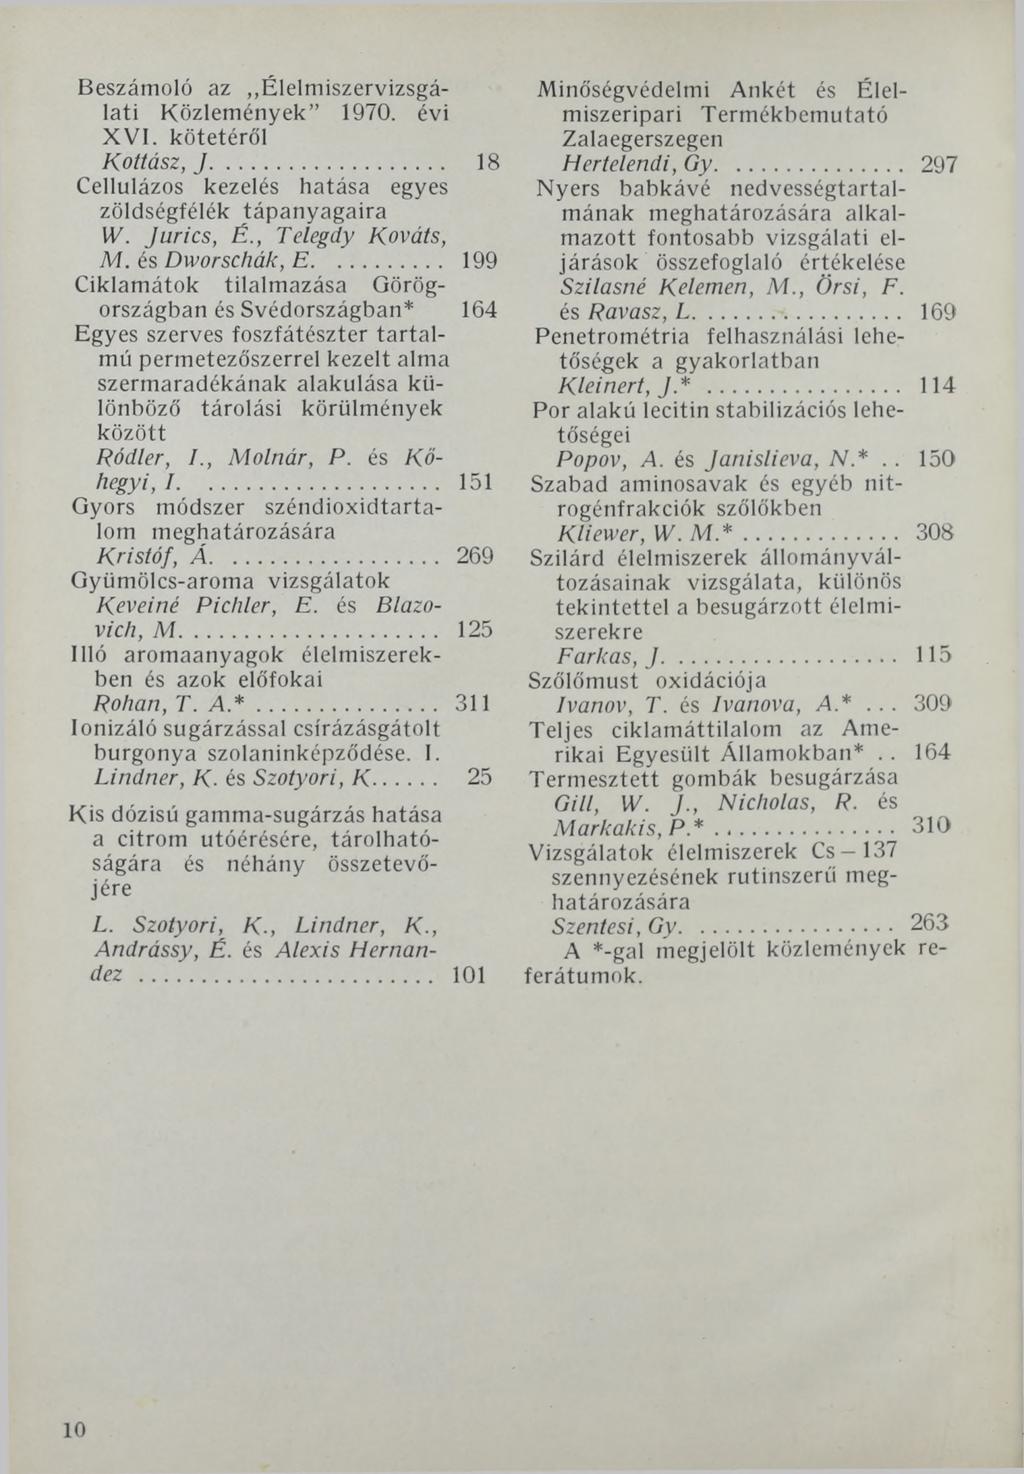 Beszámoló az Élelmiszervizsgálati Közlemények 1970. évi XVI. kötetéről Kottász, J... 18 Cellulázos kezelés hatása egyes zöldségfélék tápanyagaira W. Juries, É., Telegdy Kováts, M. és Dworschák, E.